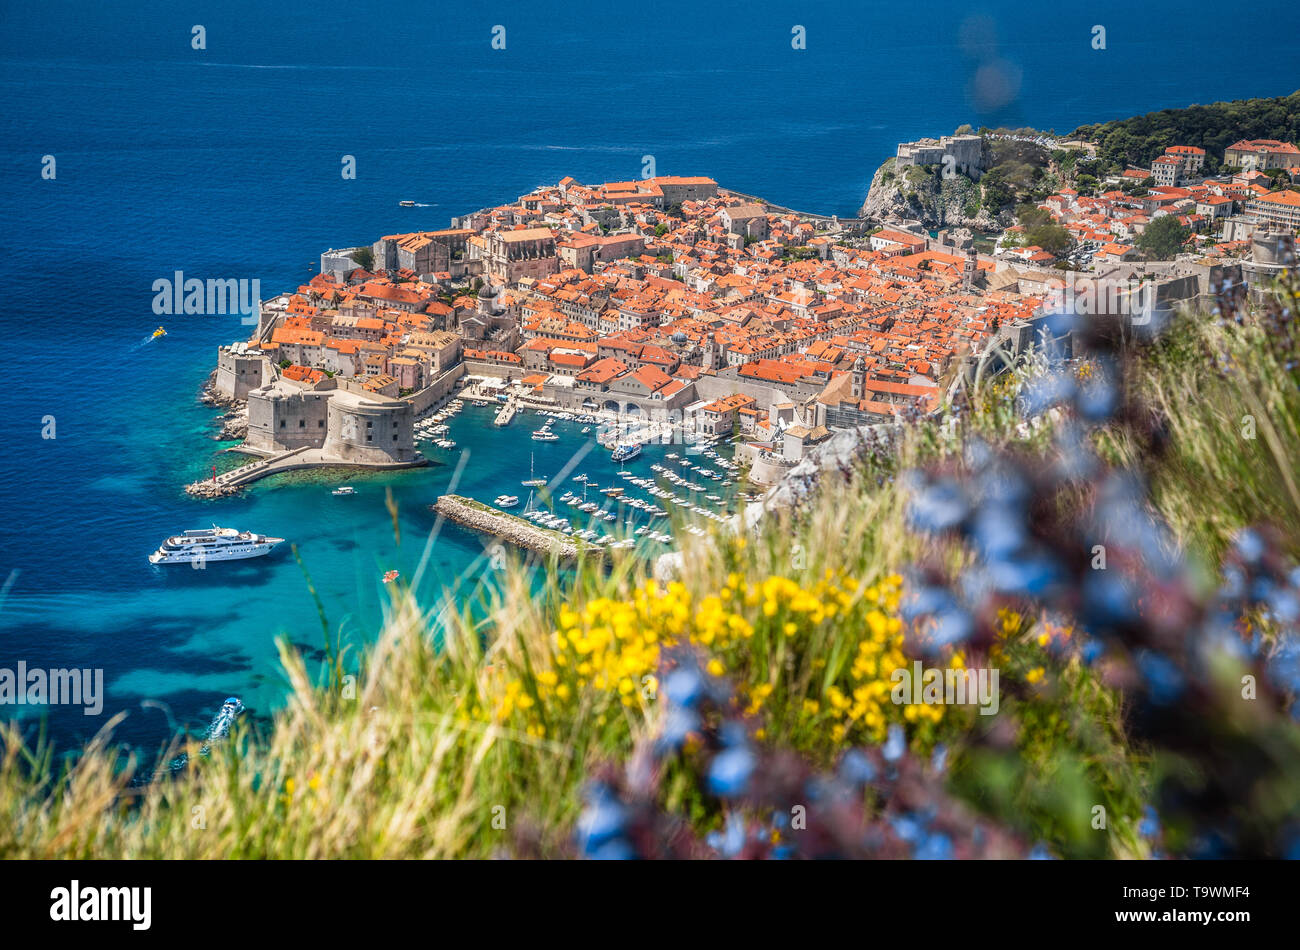 Vue panoramique vue aérienne de la ville historique de Dubrovnik, l'une des plus célèbres destinations touristiques de la mer Méditerranée, à partir de la montagne sur une SRT Banque D'Images